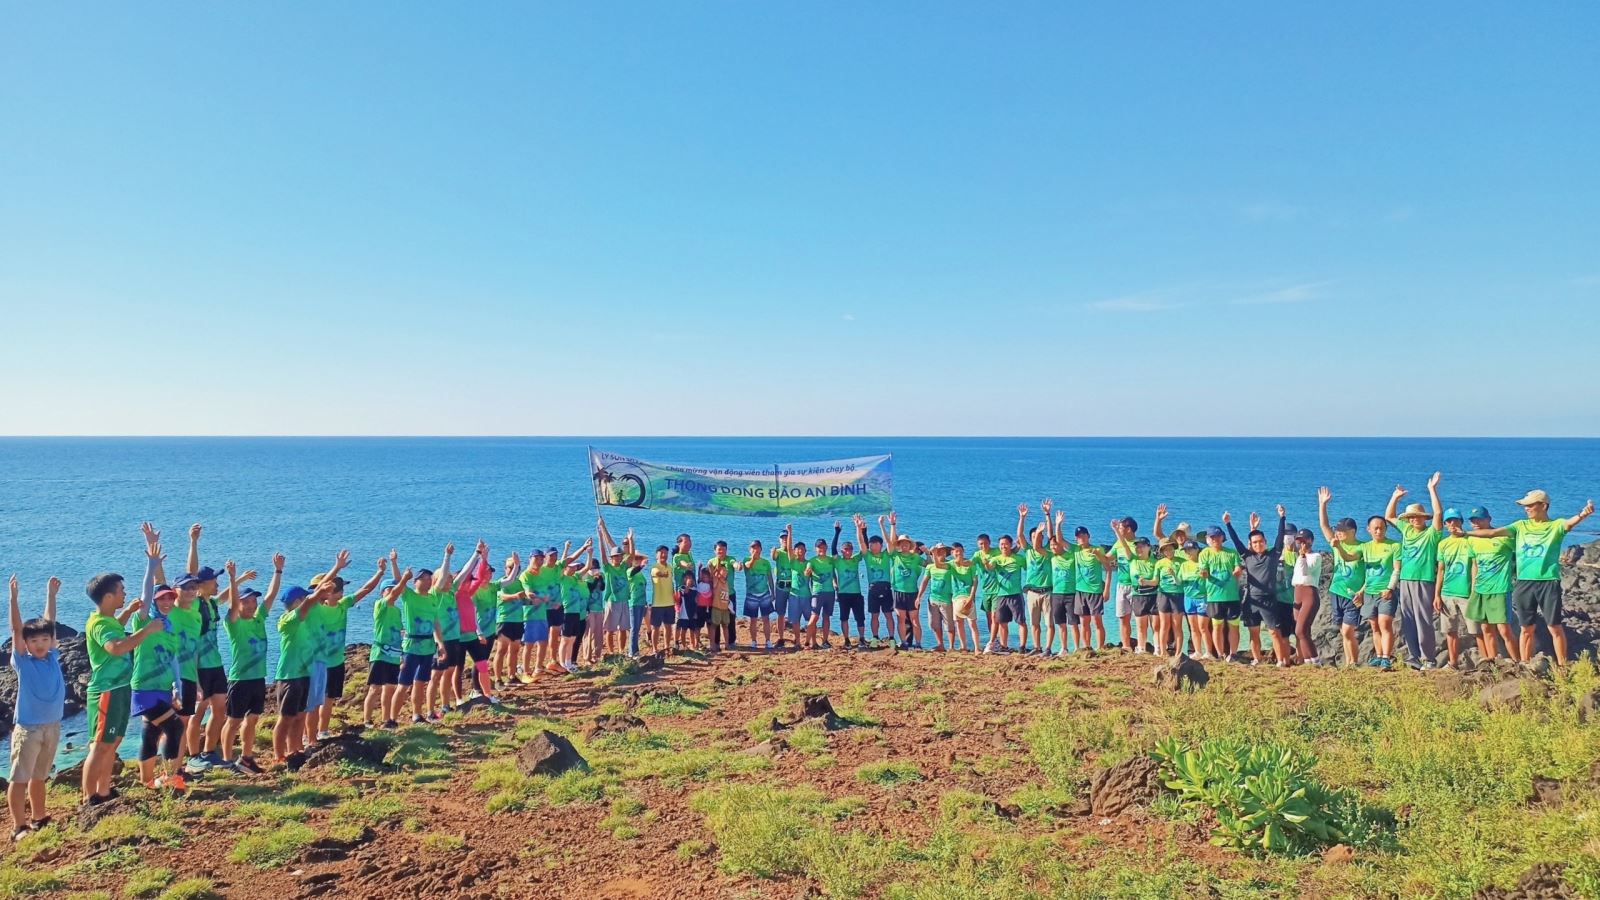 VĐV BSR dự thi bơi vượt biển và chạy bộ trên đảo An Bình (Lý Sơn)